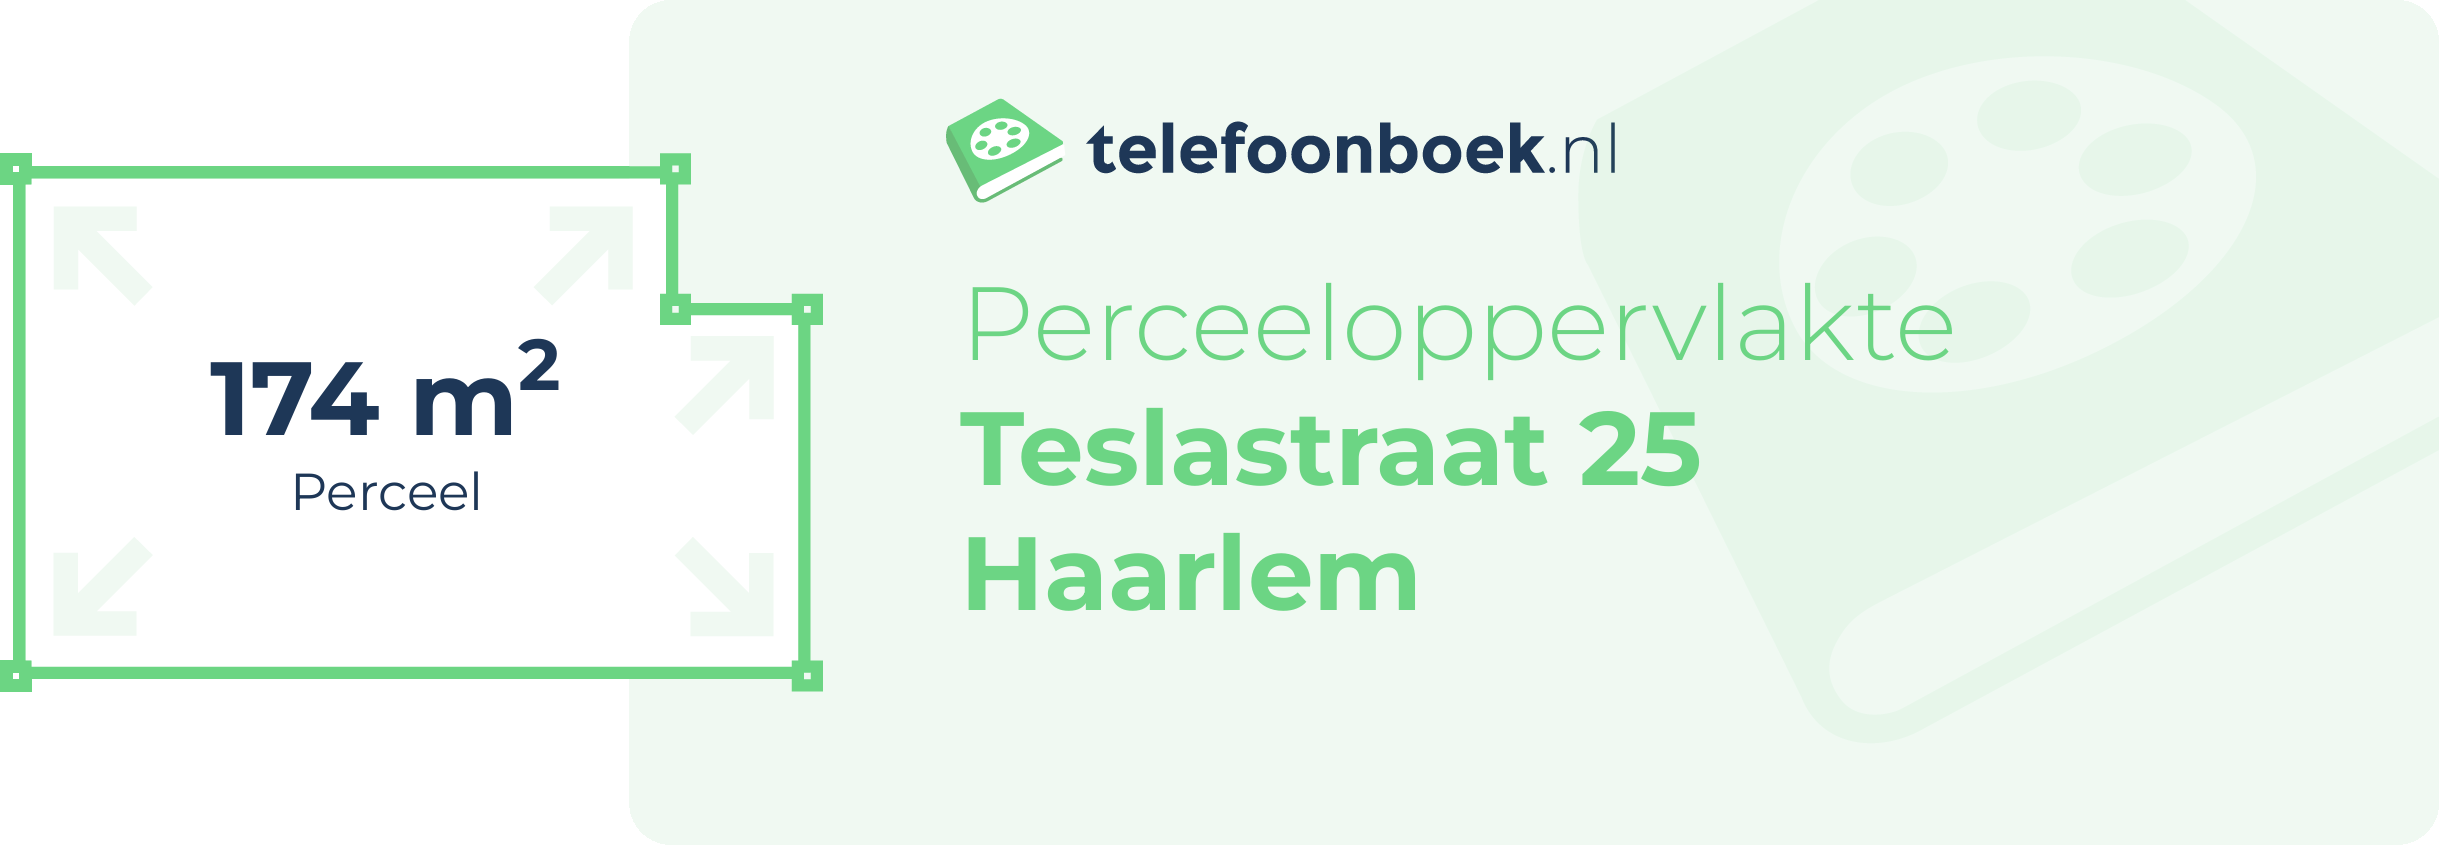 Perceeloppervlakte Teslastraat 25 Haarlem